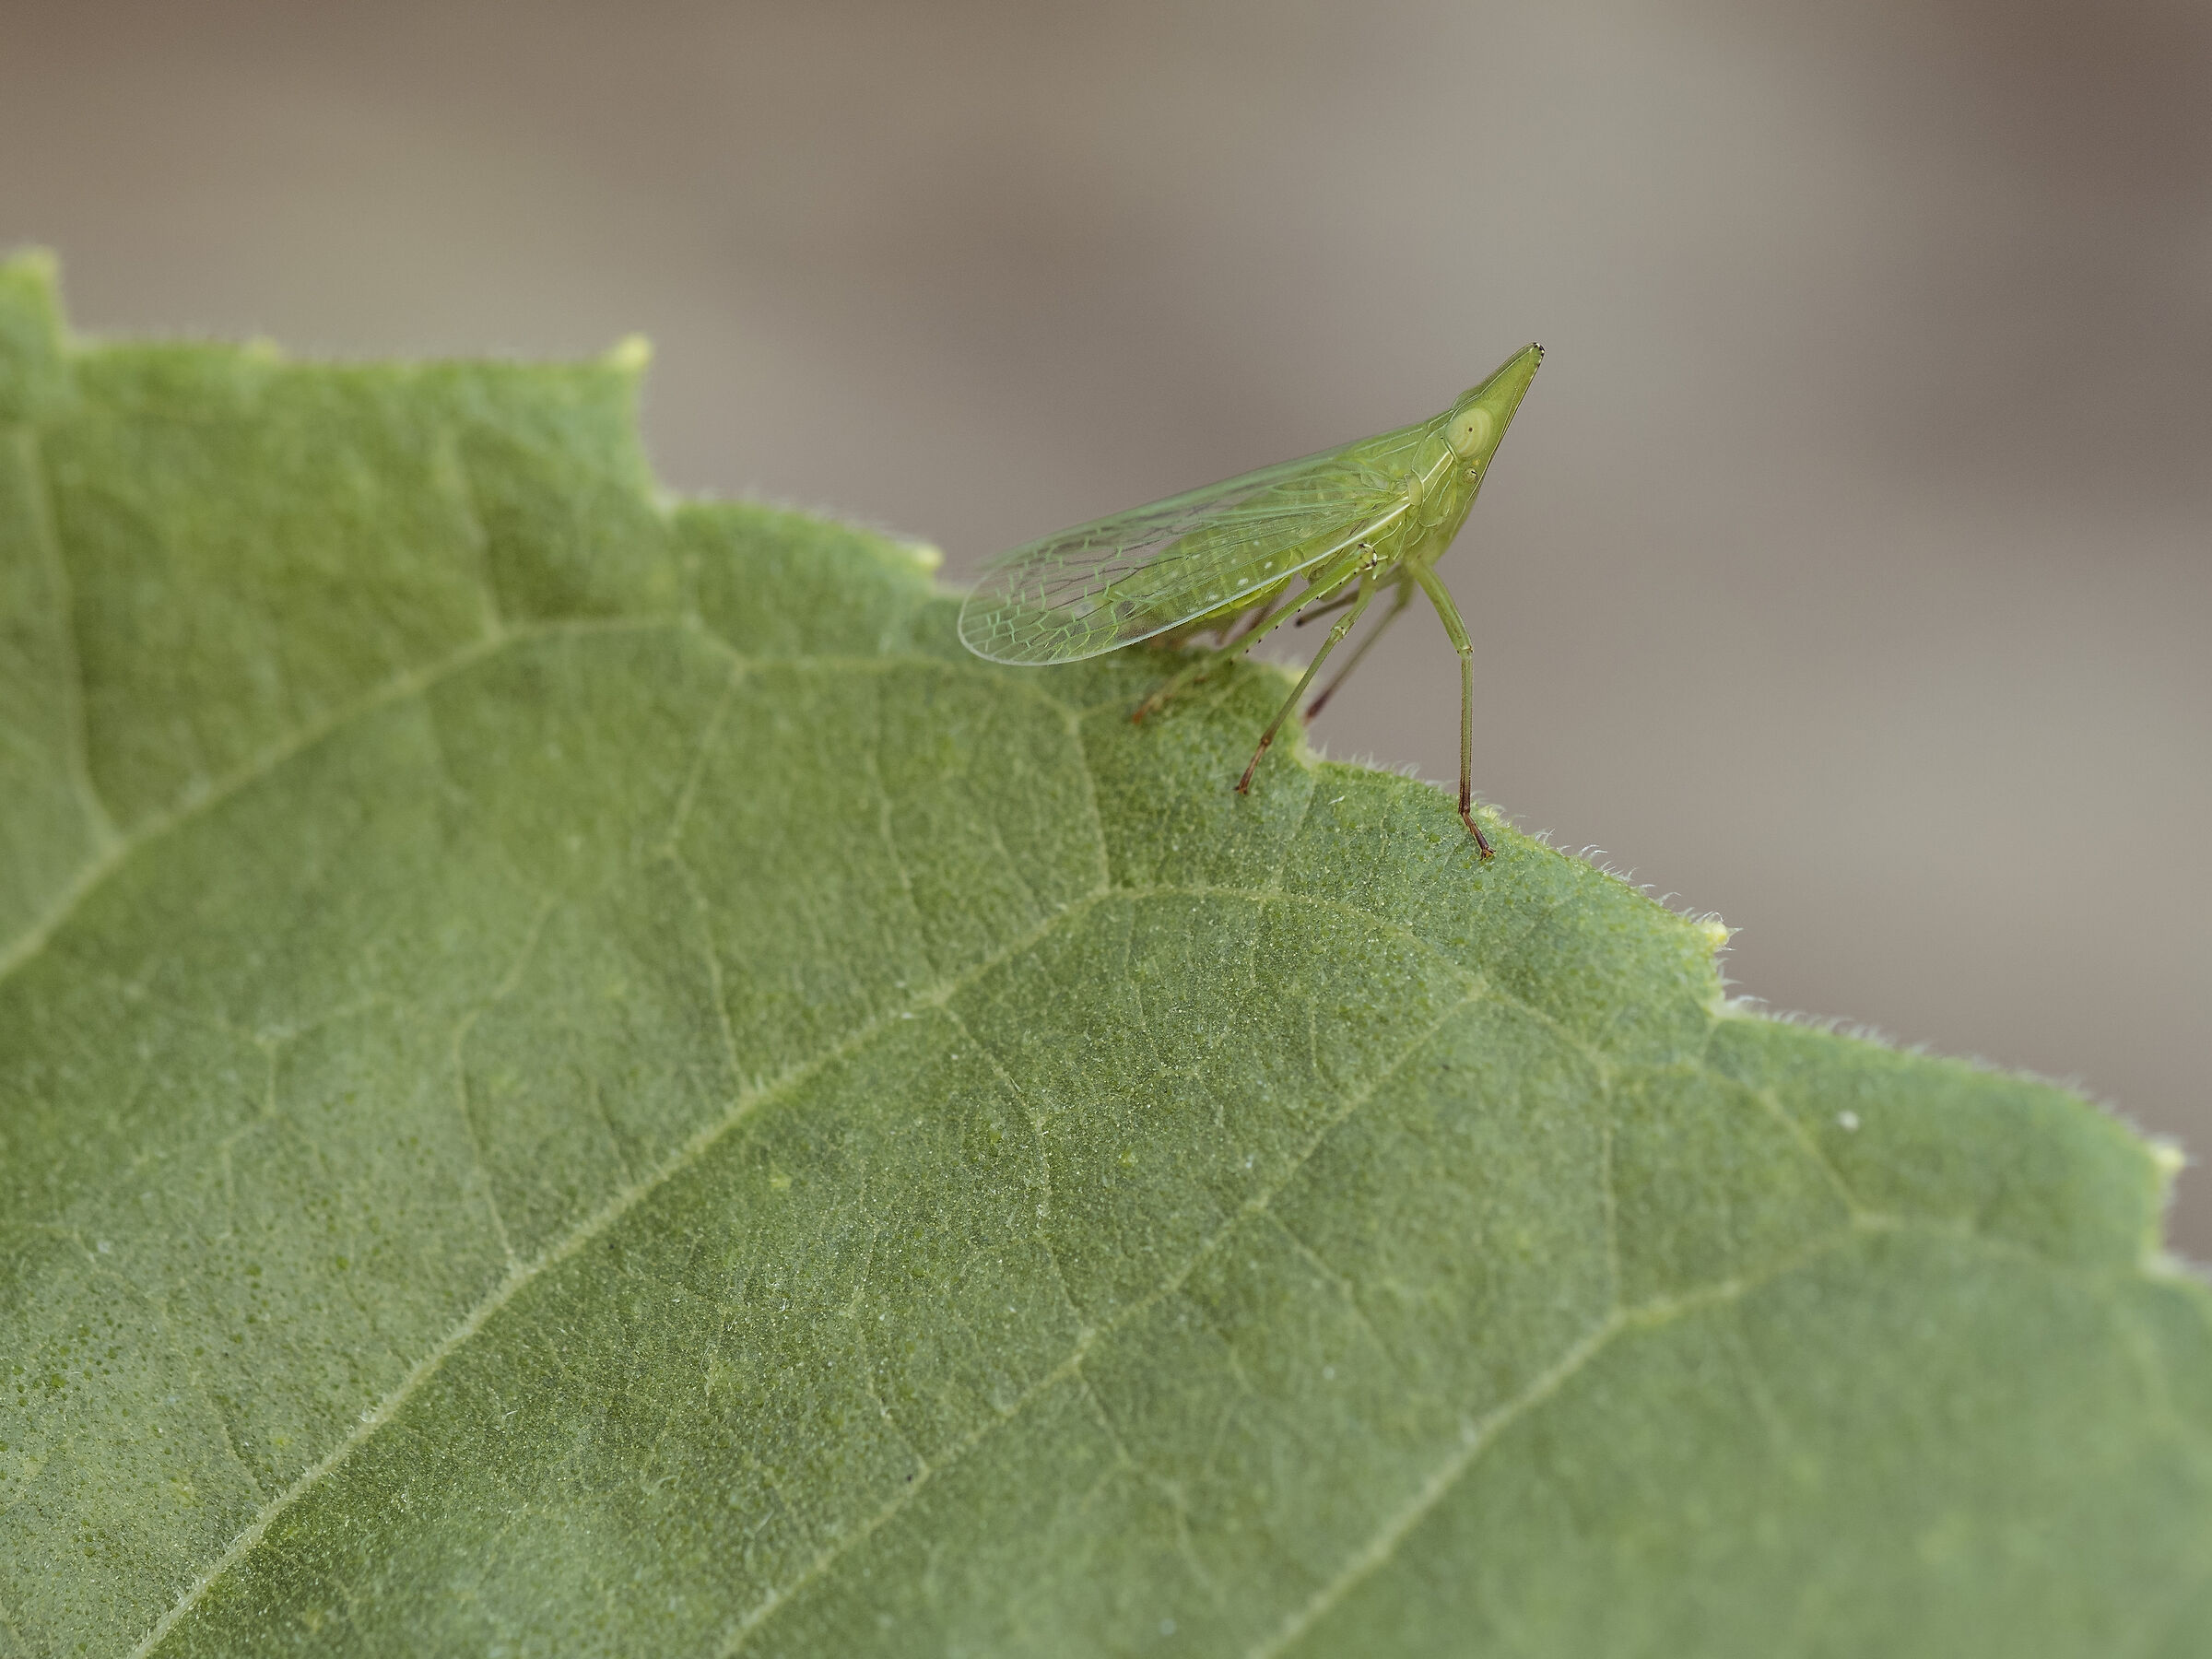 Nasuta leafhopper - Dictyophara europaea...